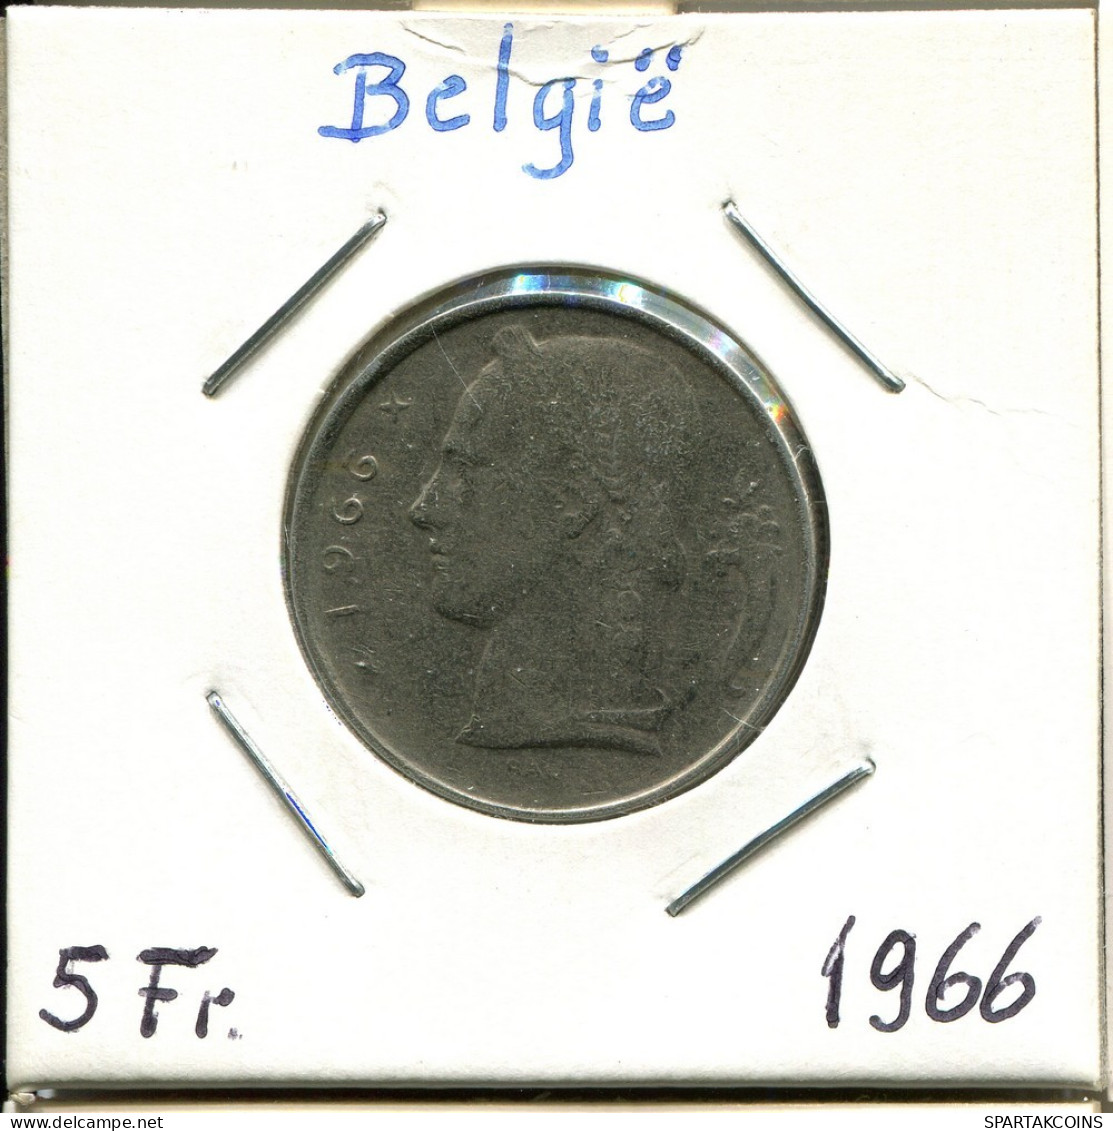 5 FRANCS 1965 DUTCH Text BÉLGICA BELGIUM Moneda #BA593.E.A - 5 Francs